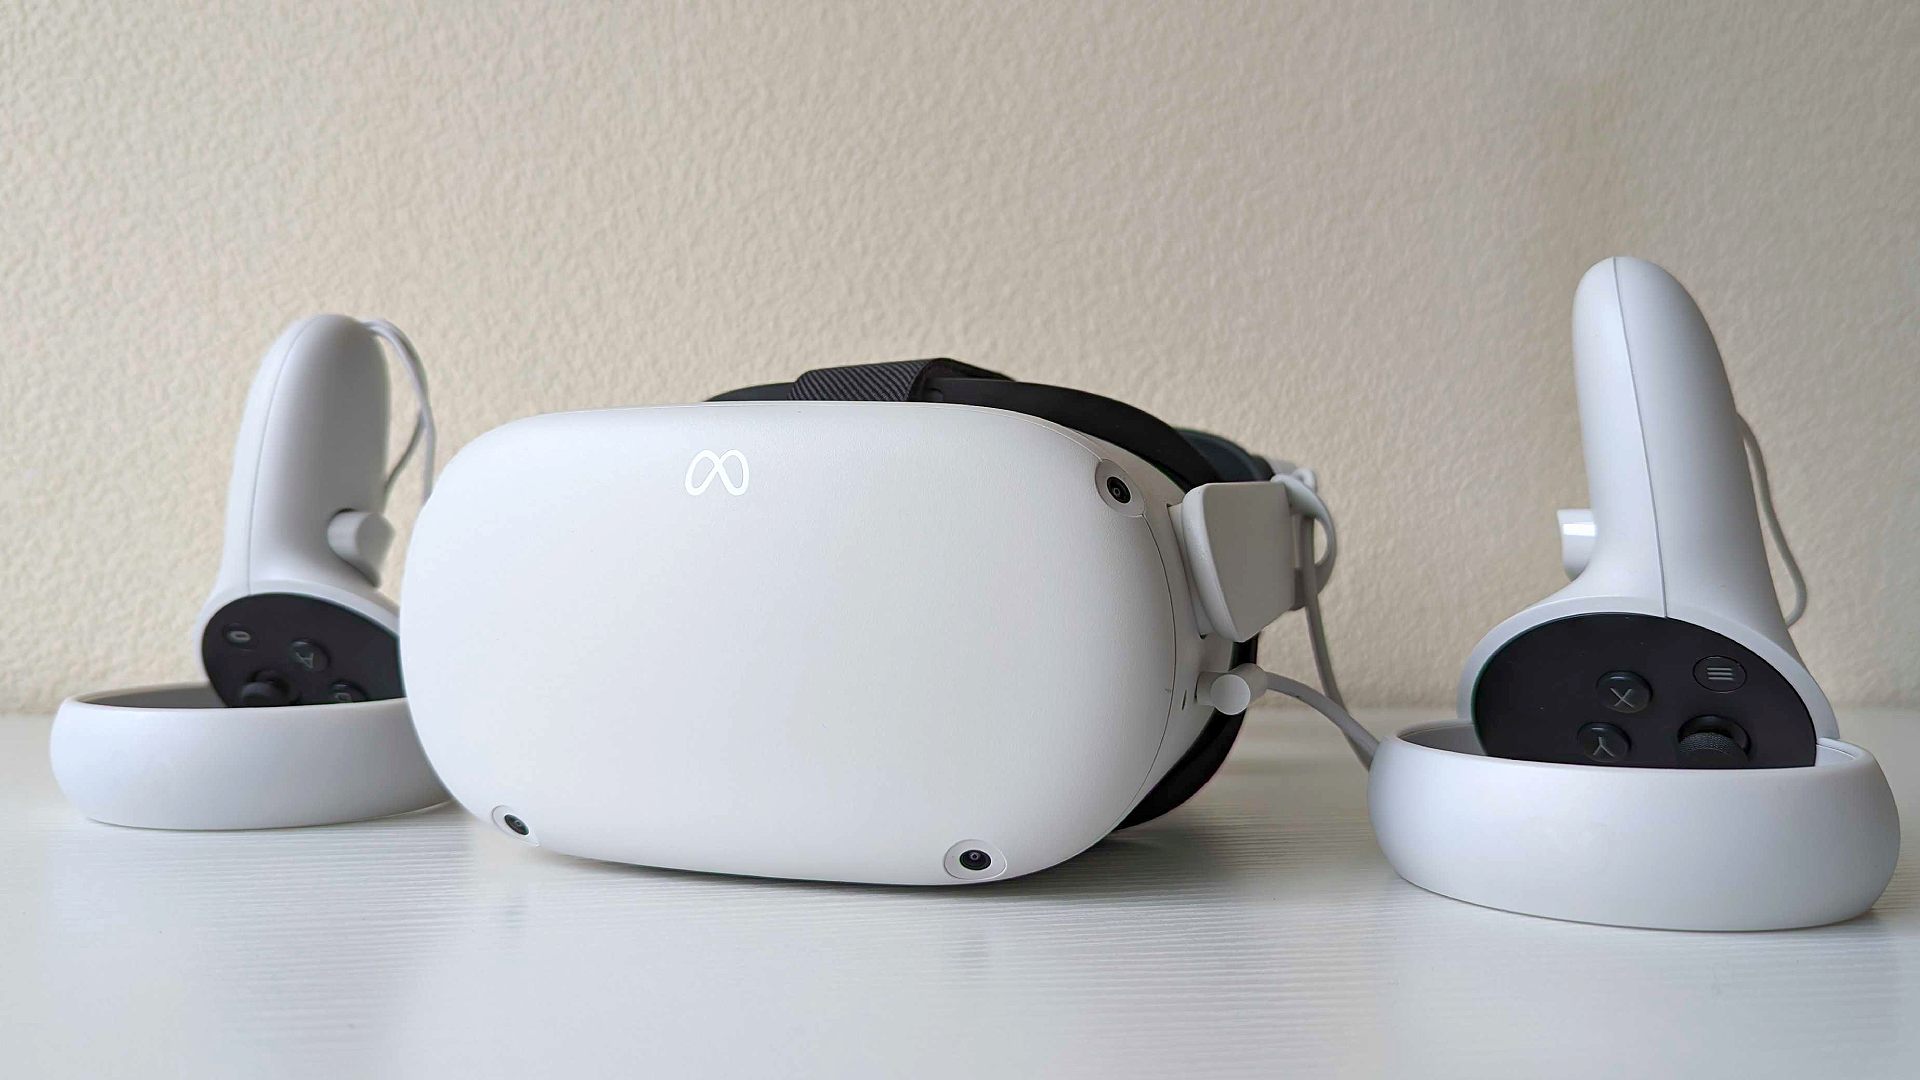 אוזניות ה- VR הטובות ביותר: Meta Quest 2 עם בקרים על משטח לבן